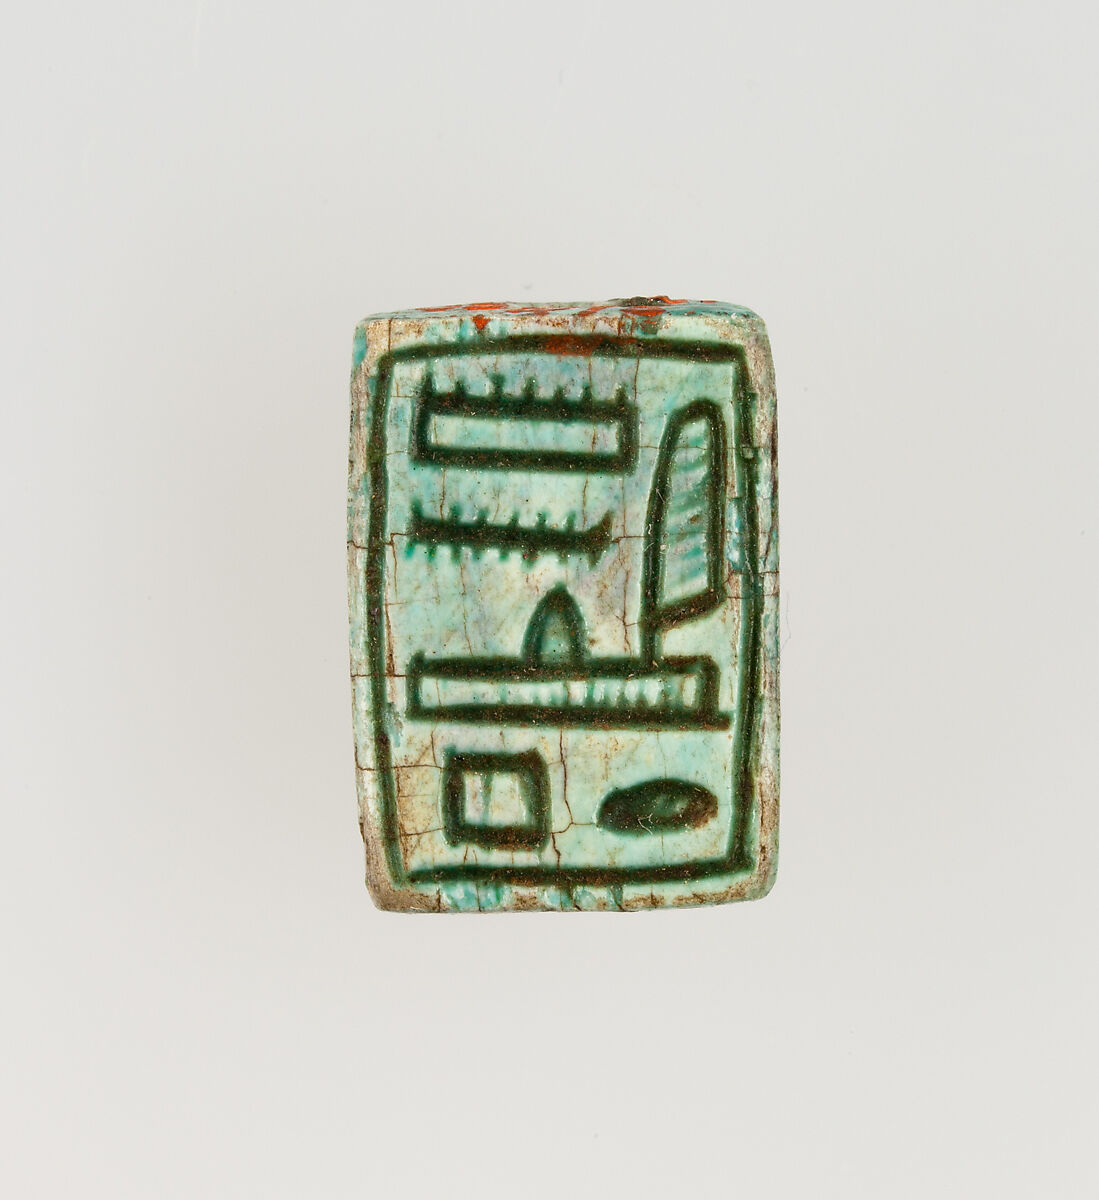 Stamp Seal Inscribed for Amenhotep I, Steatite (glazed) 